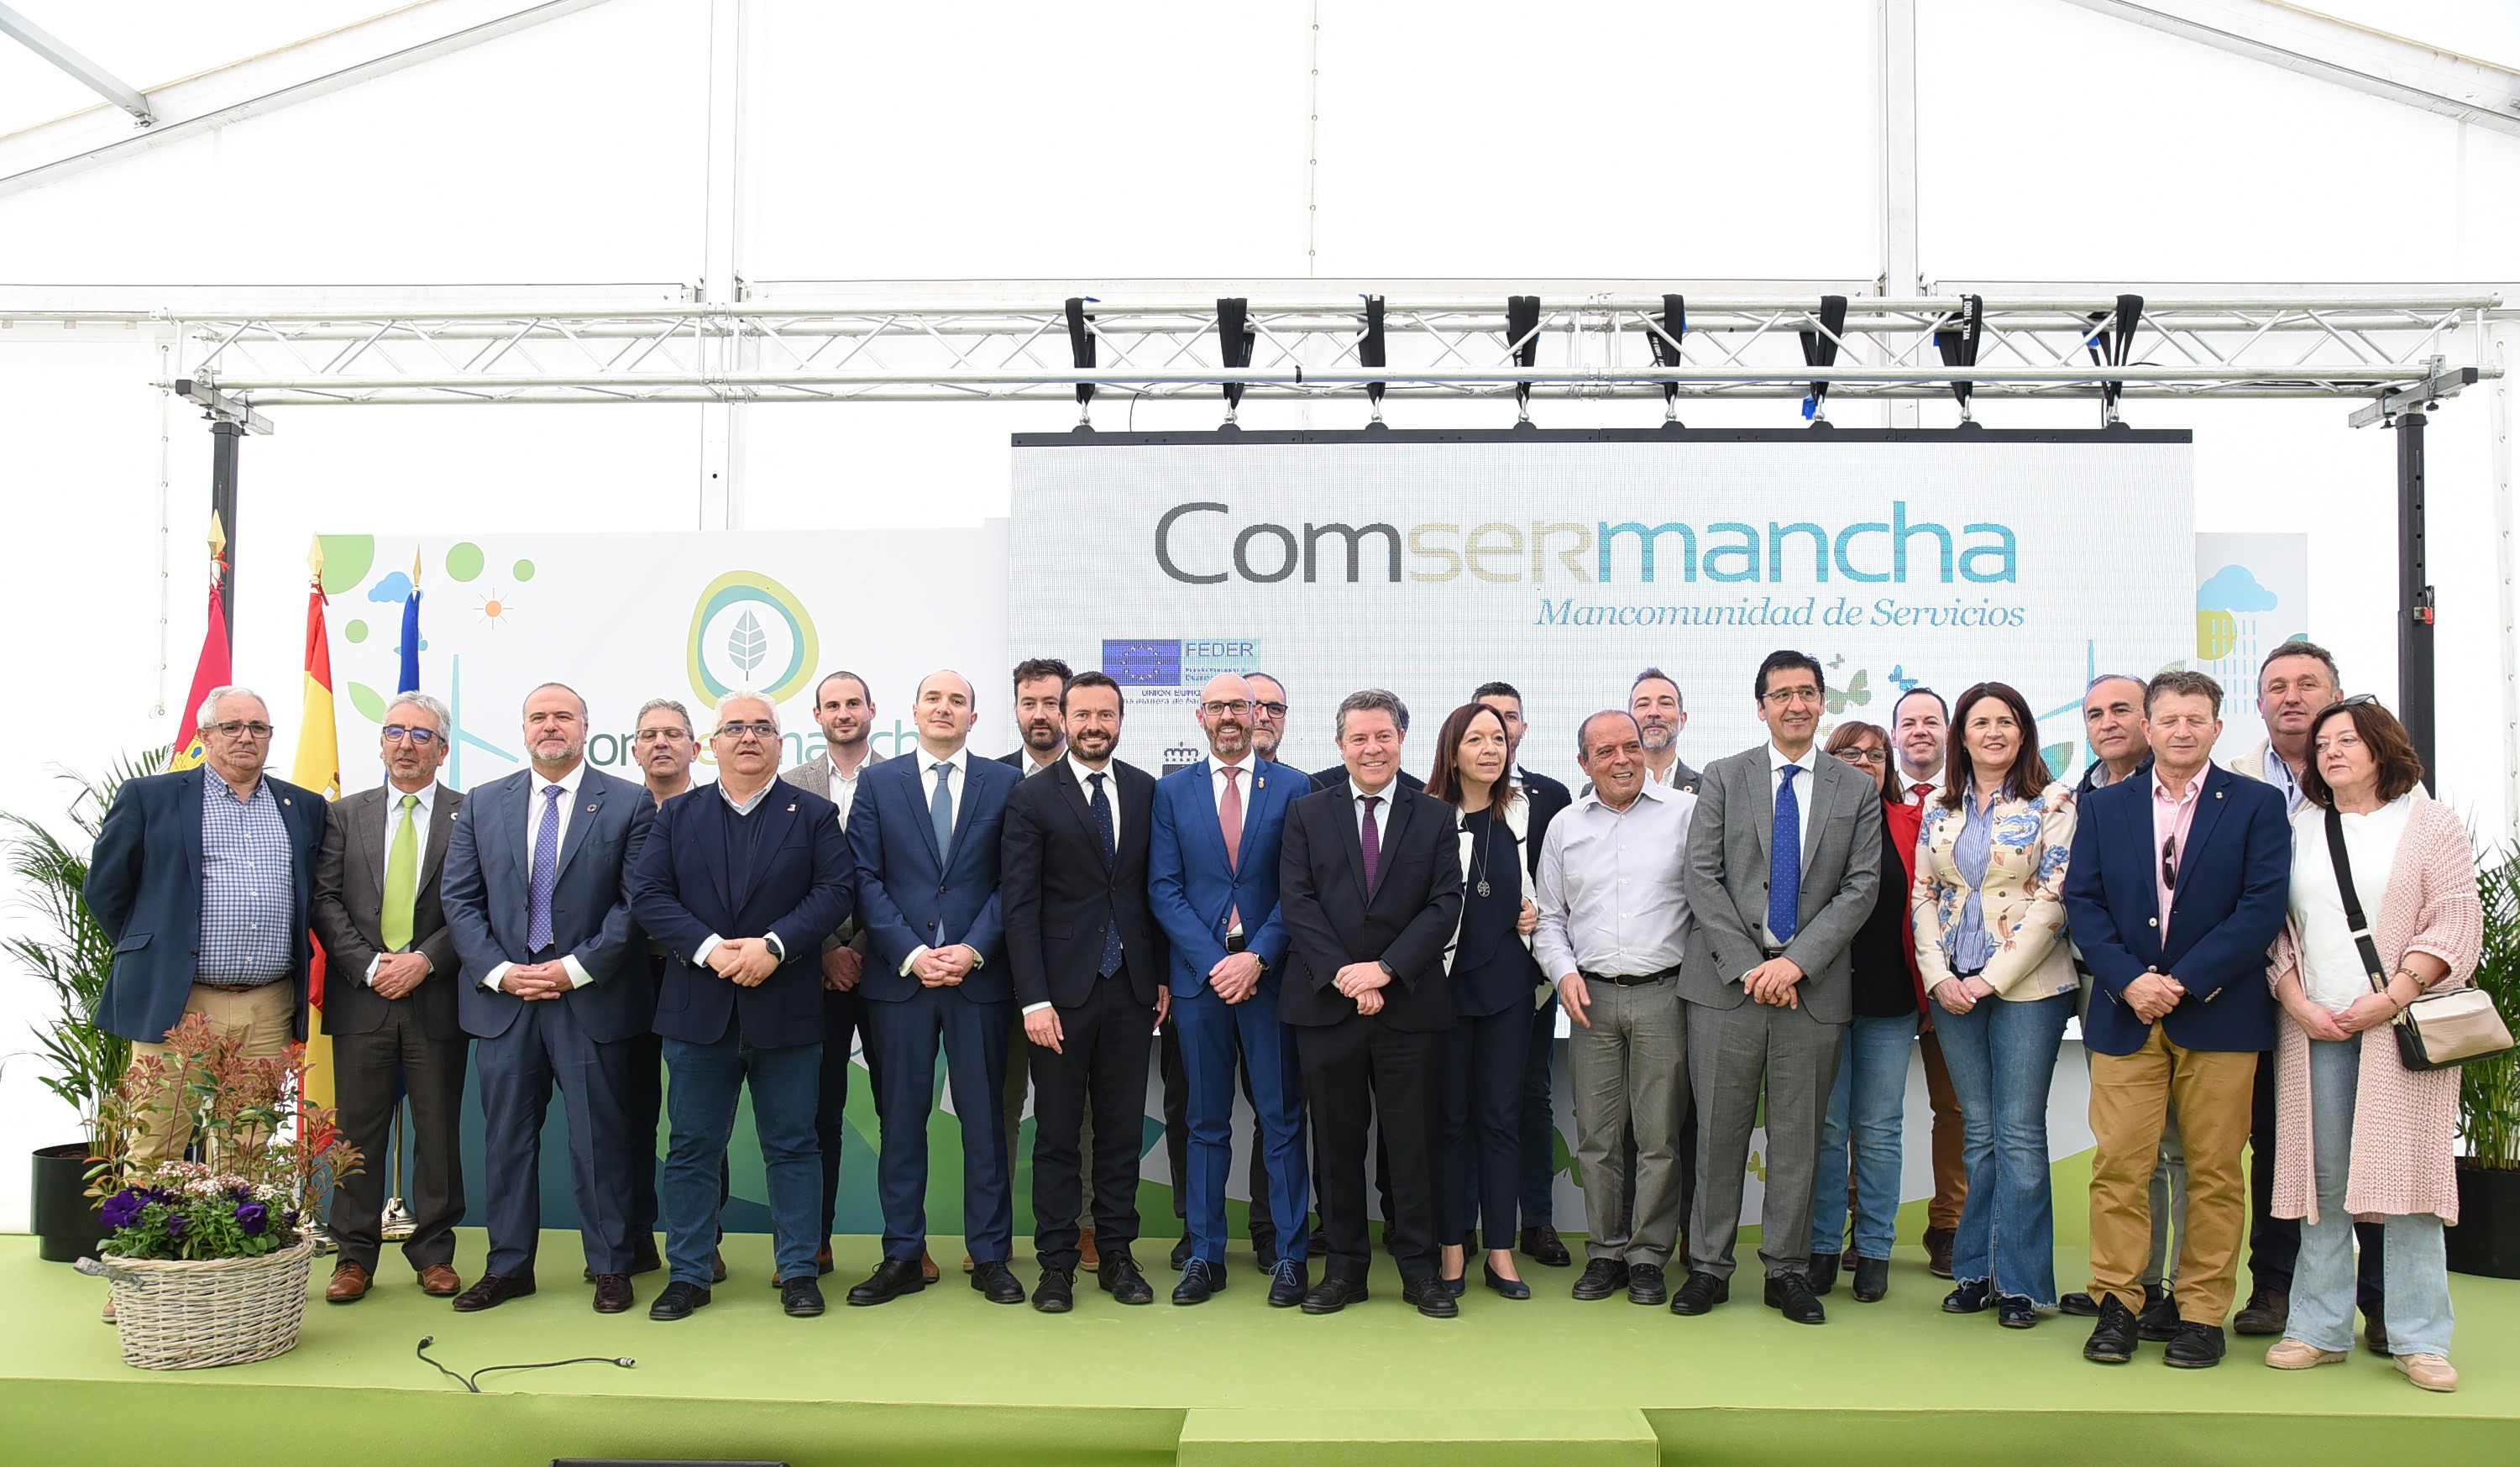 El Presidente De Castilla-La Mancha, Emiliano García-Page, Asiste A La Mejora Y Modernización De La Planta De Tratamiento ‘CONSERMANCHA’.